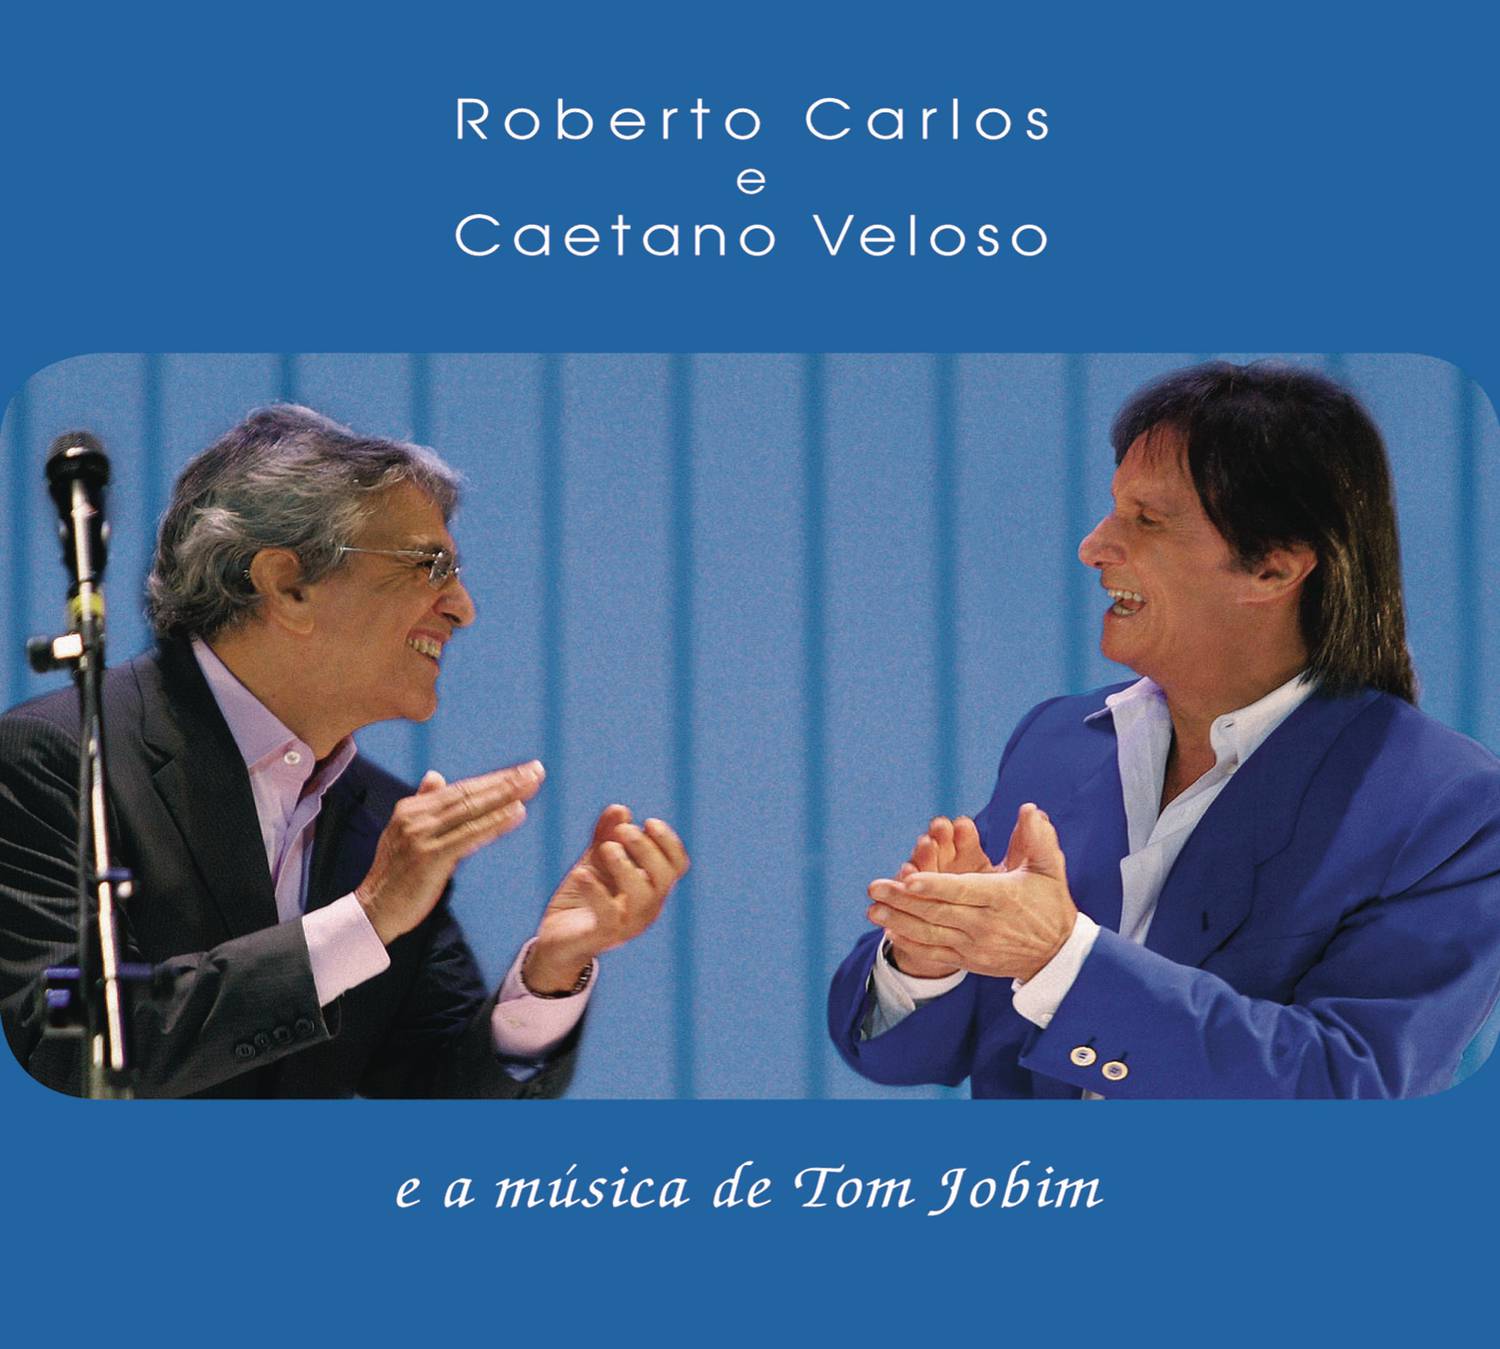 Roberto Carlos e Caetano Veloso e a mu sica de Tom Jobim